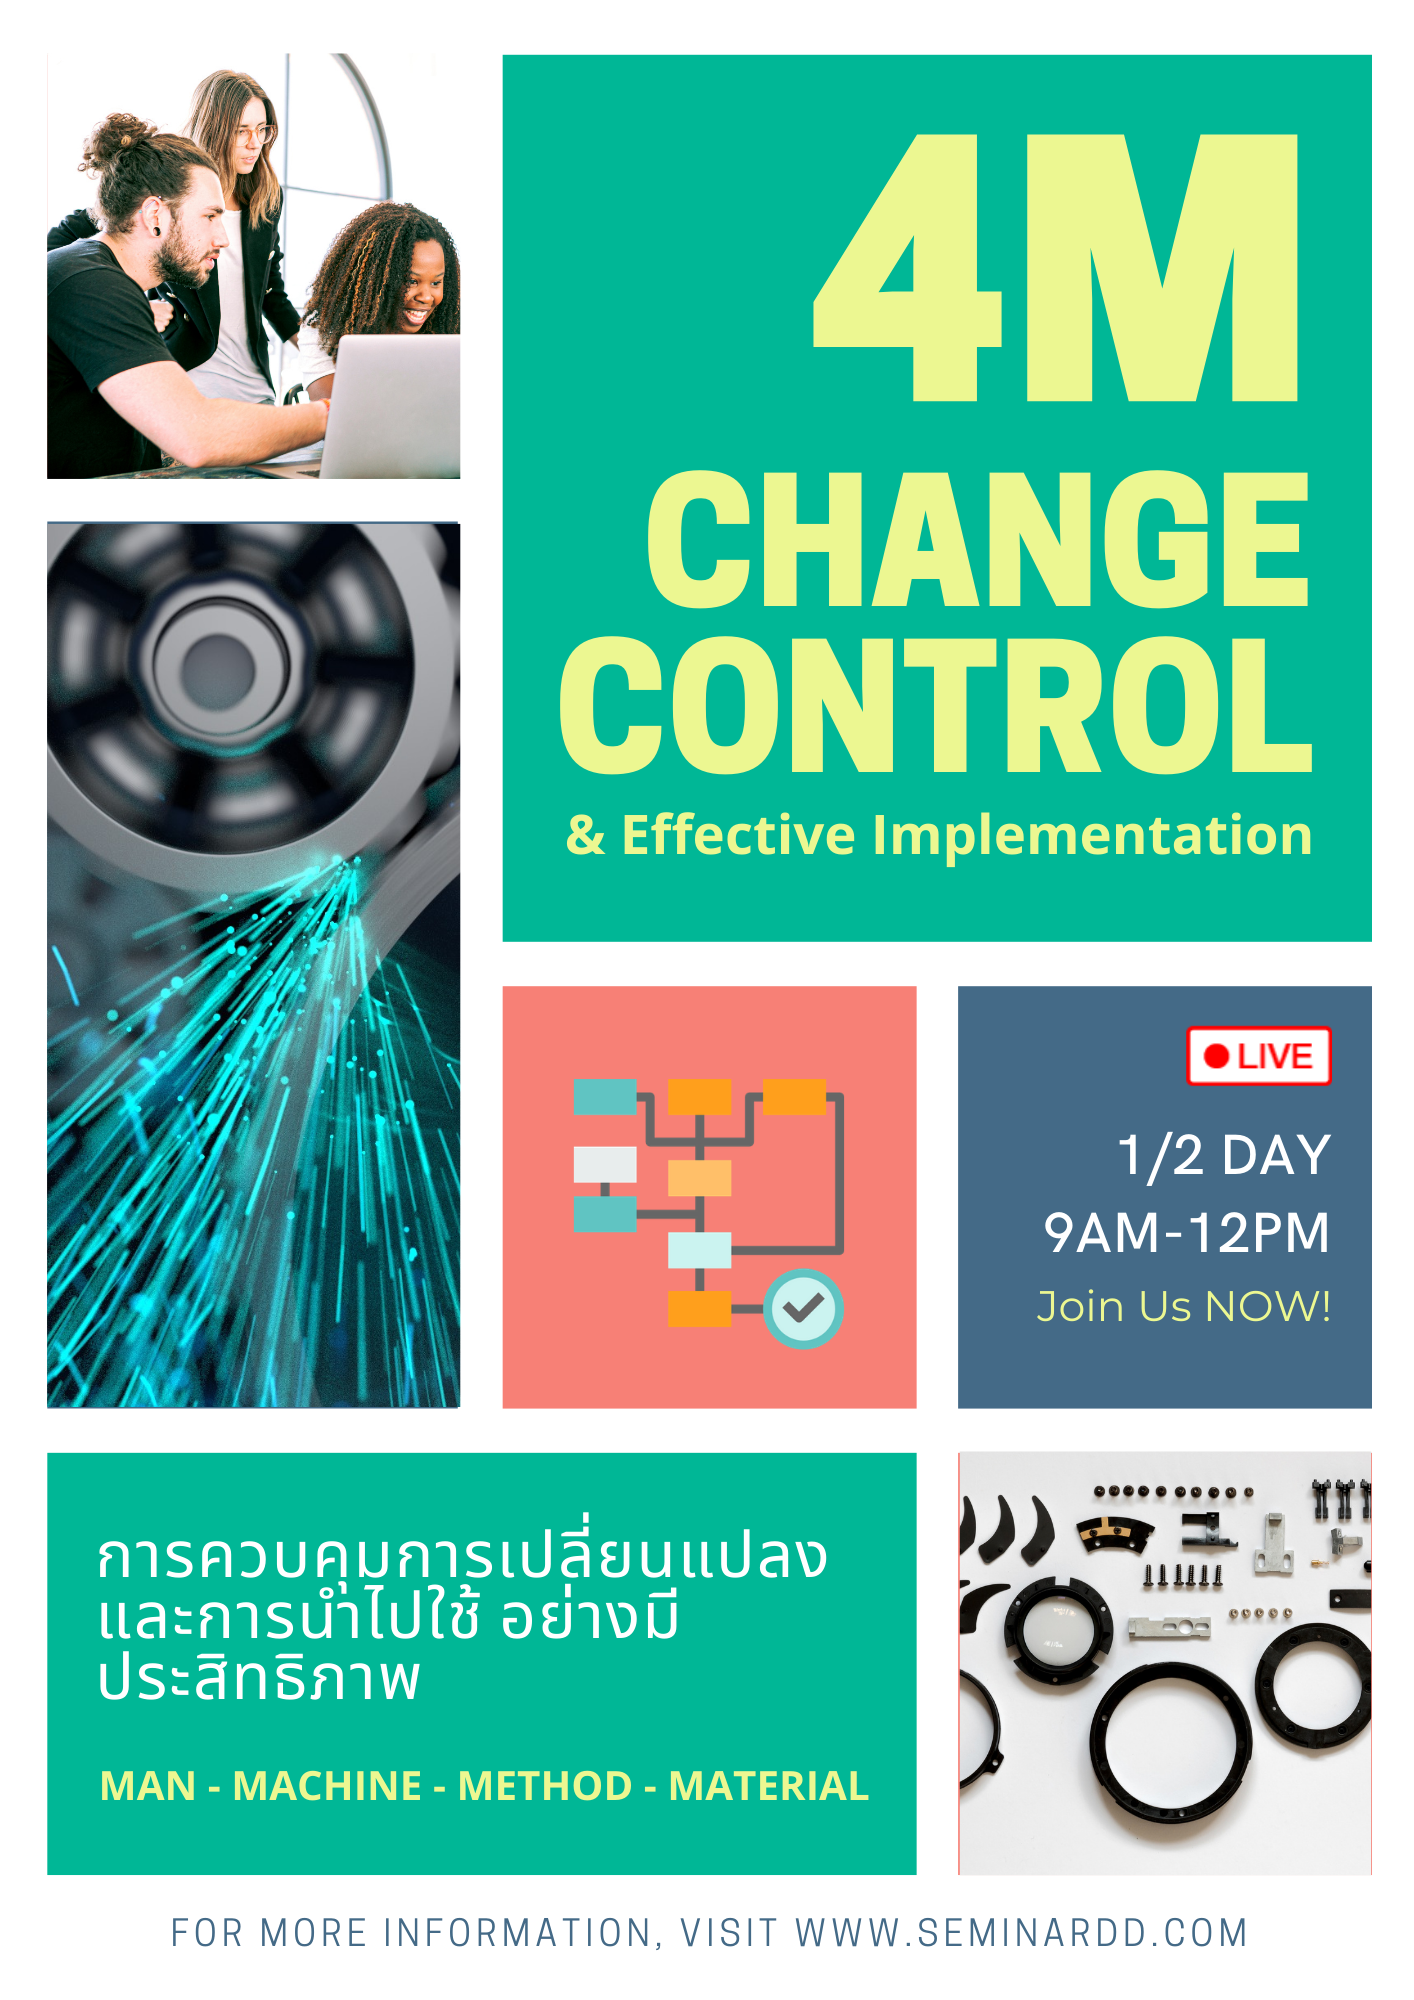 หลักสูตรอบรมออนไลน์ : การควบคุมการเปลี่ยนแปลง และการนำไปใช้ อย่างมีประสิทธิภาพ (4M Change Control & Effective Implementation) - หลักสูตร 3 ชั่วโมง